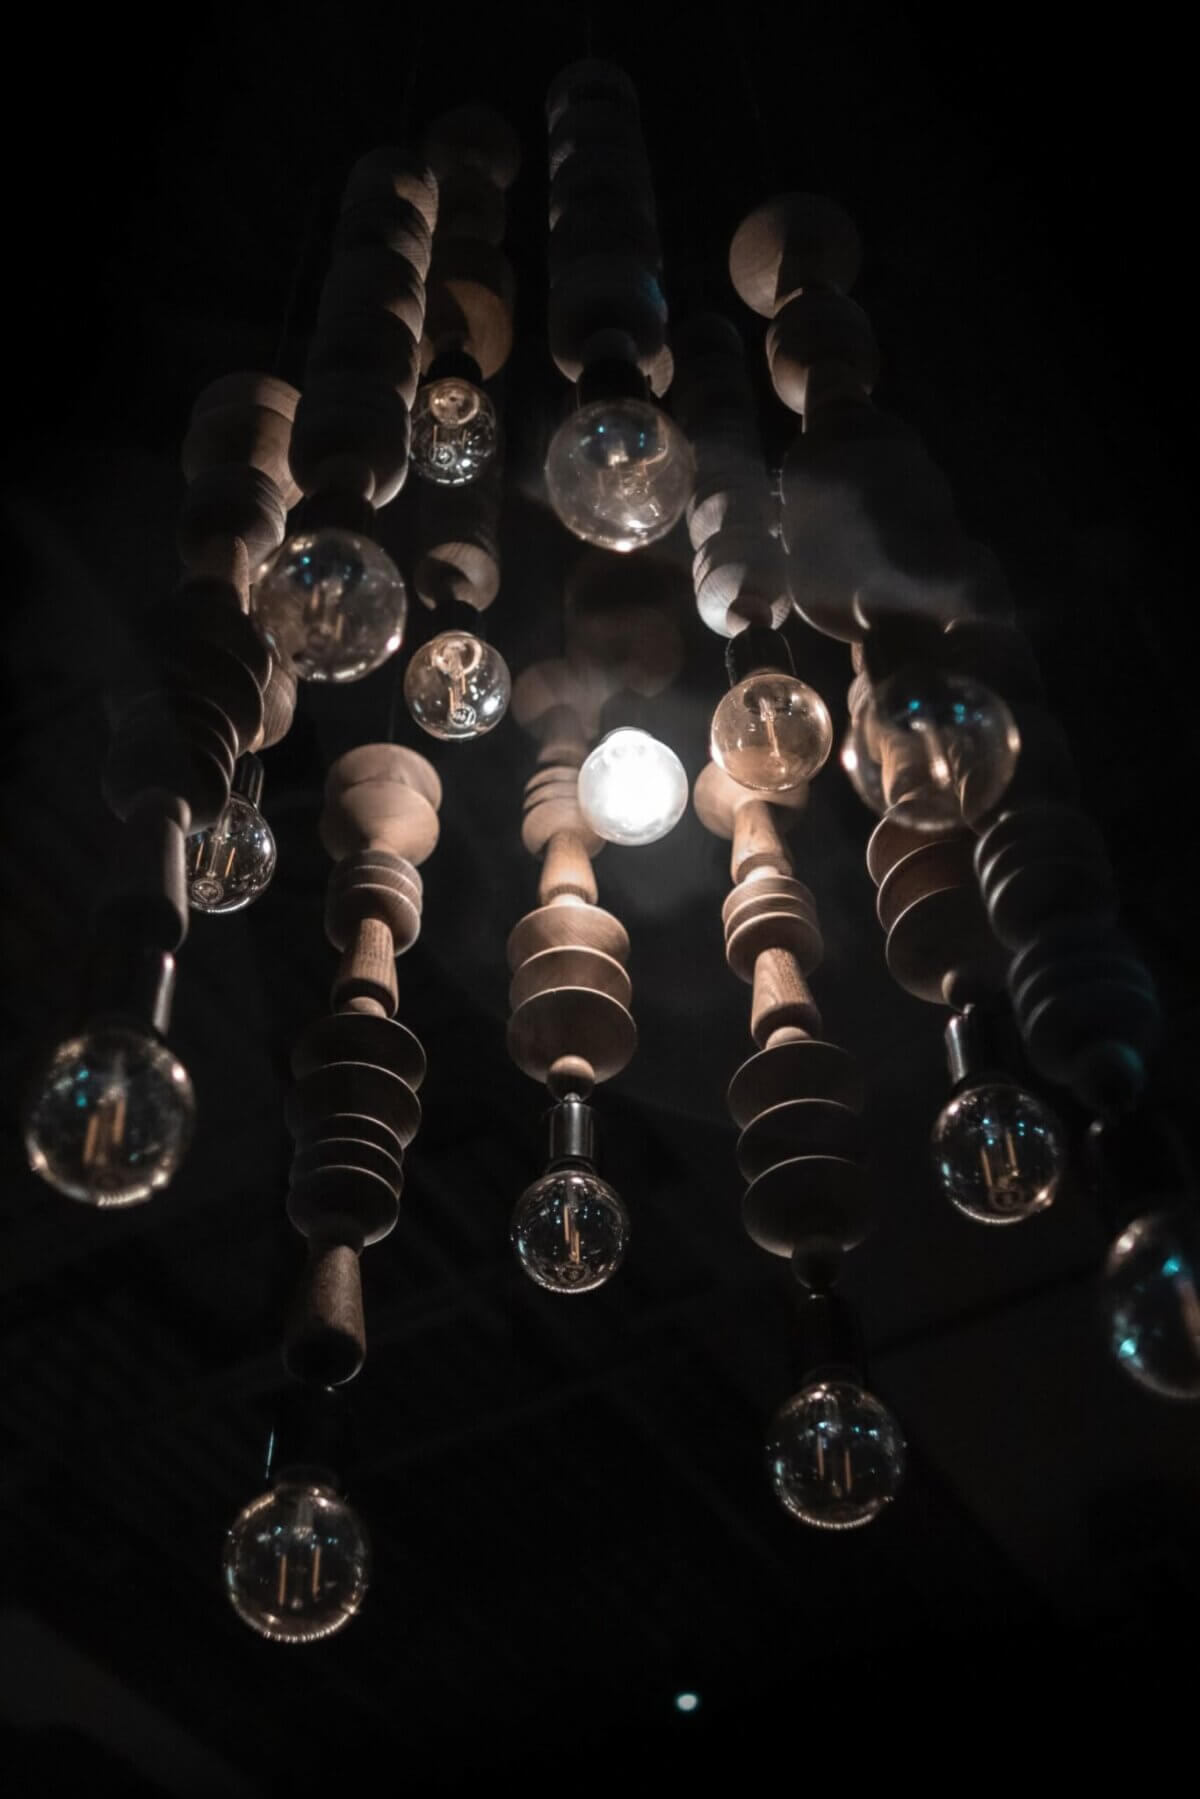 turned-on light bulbs